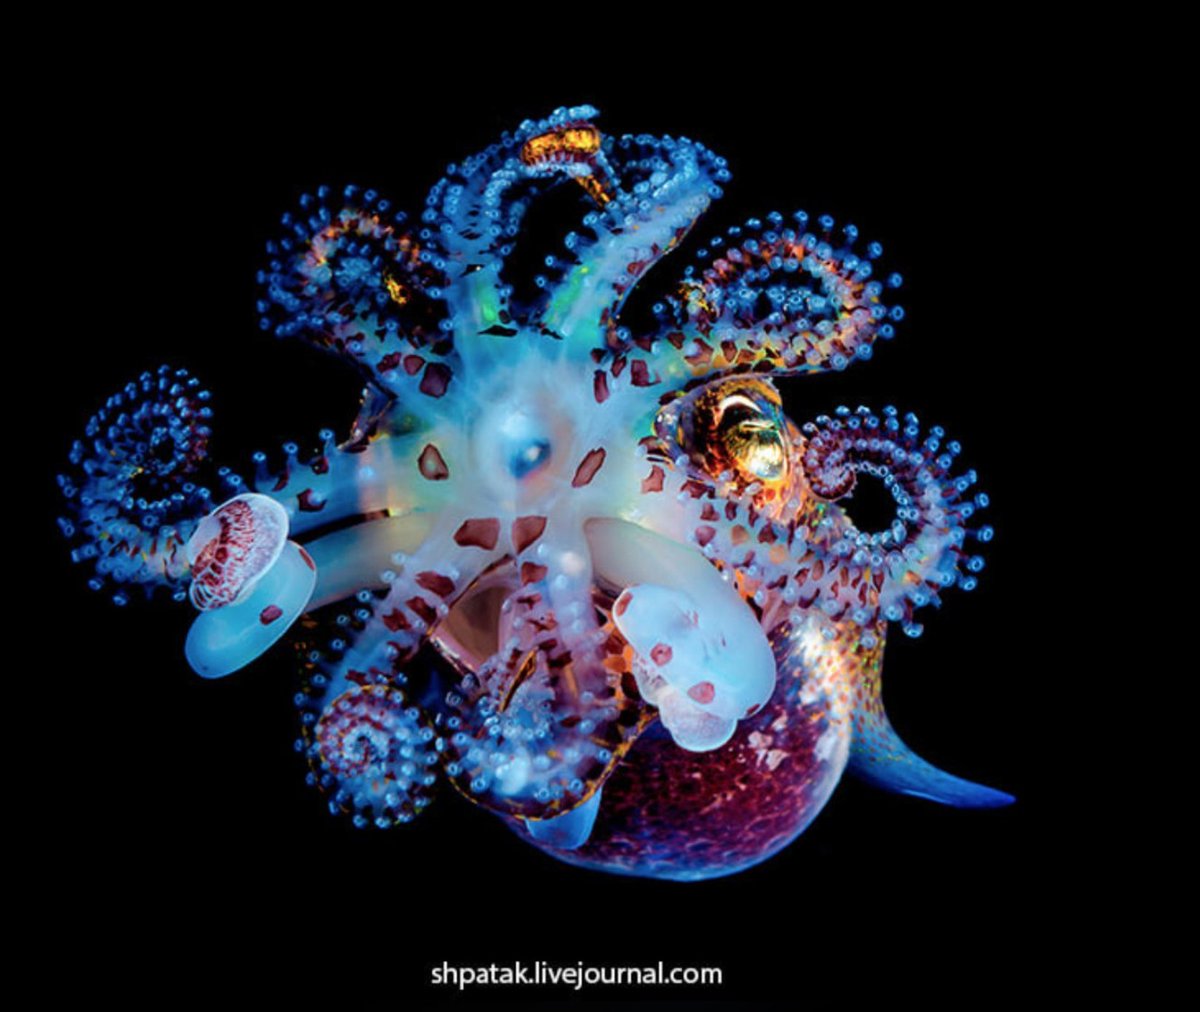 Colorful bébé bobtail squid showing all its best colors.  Andrey Shpatak  https://bit.ly/33h6Toe 